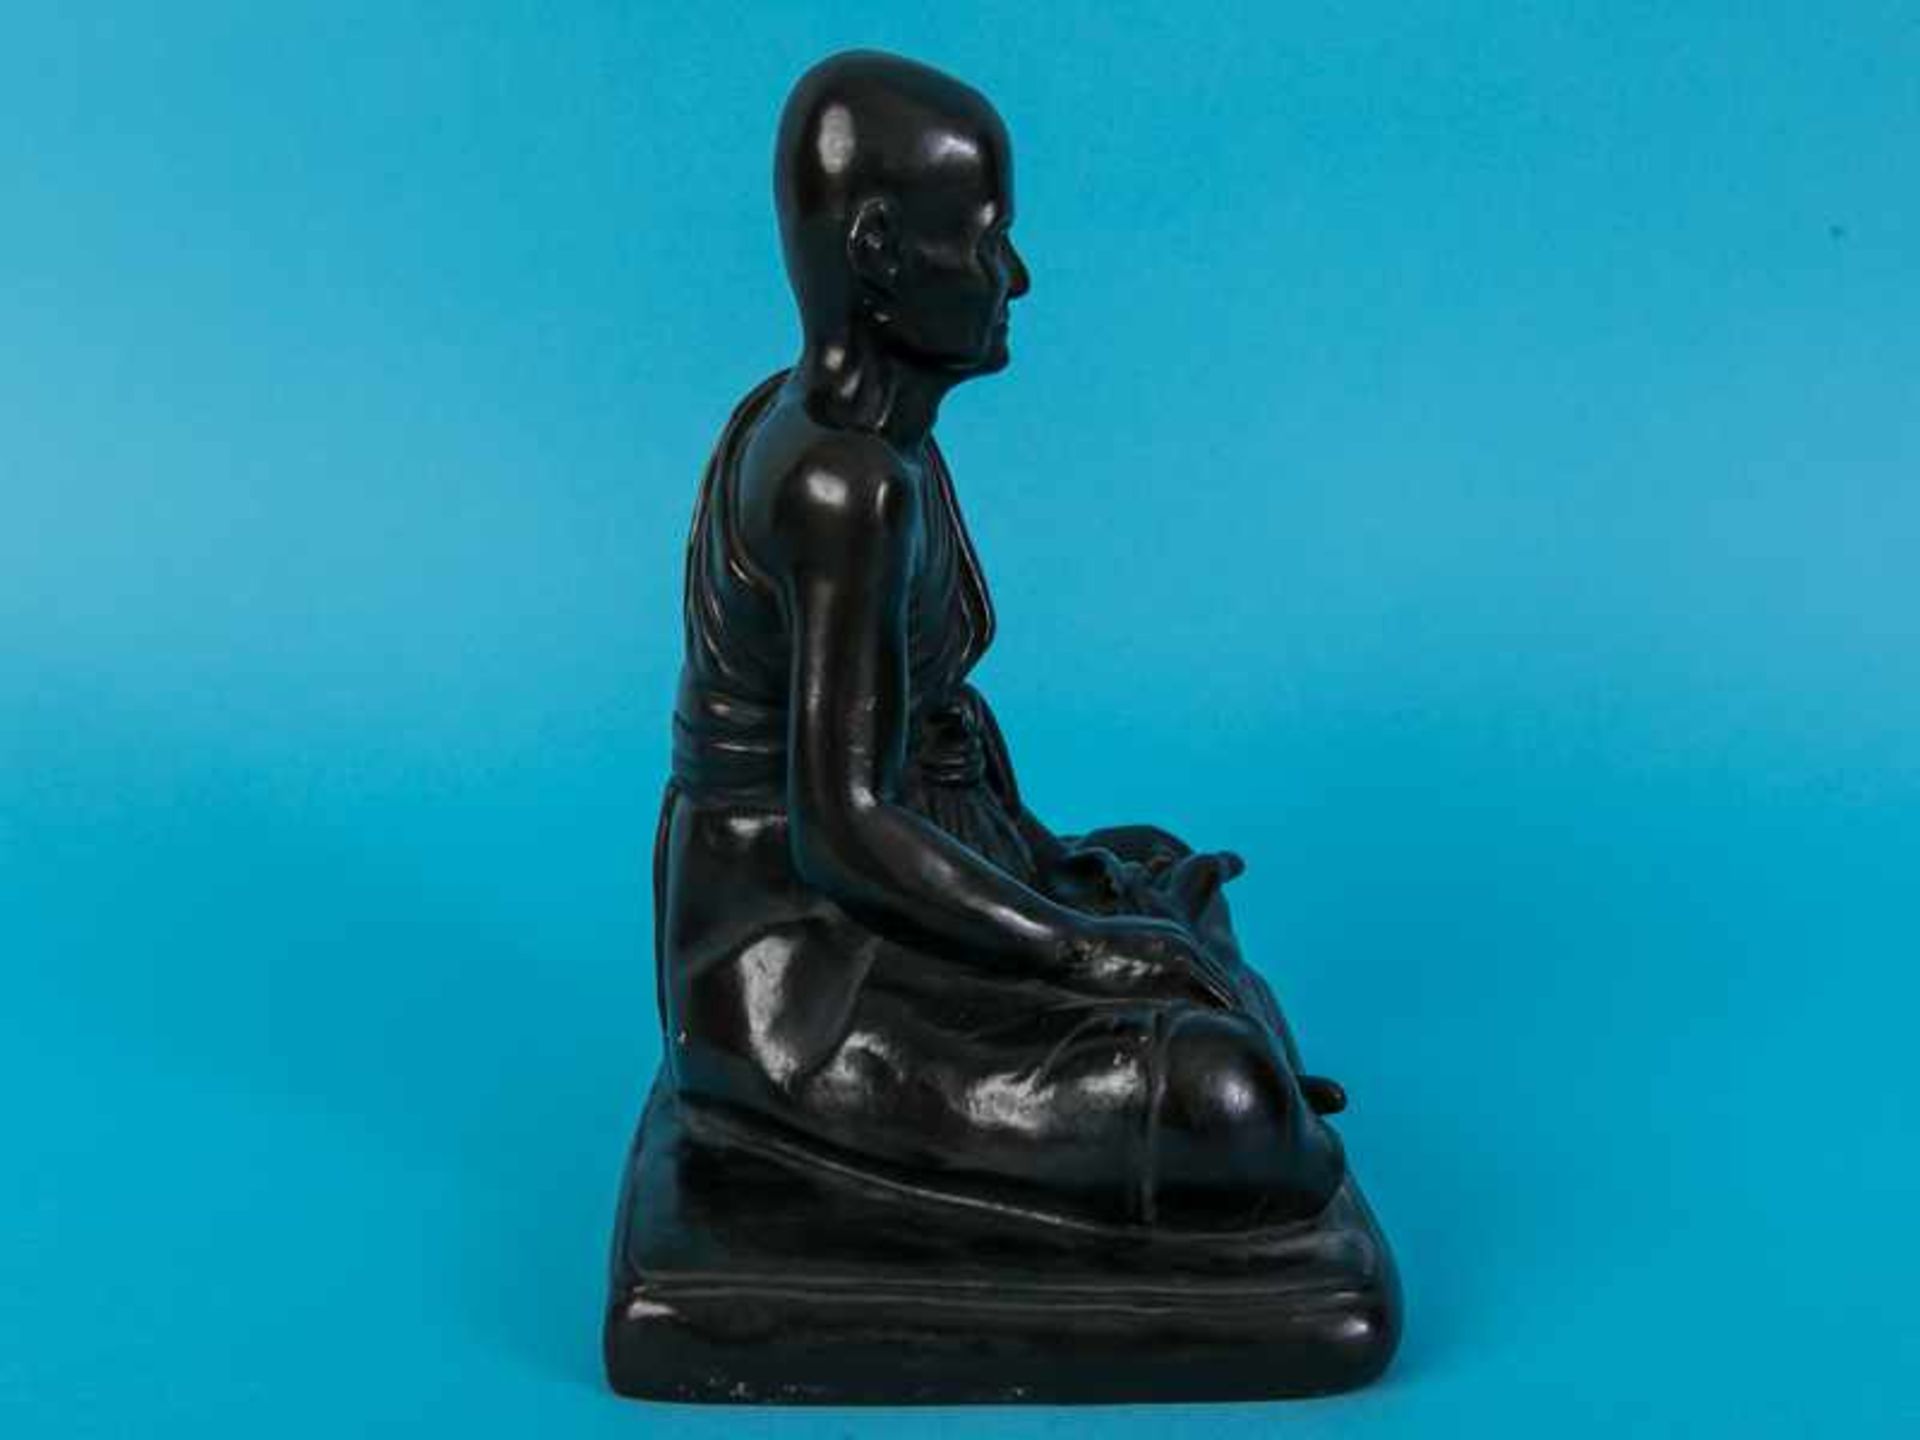 Figurenplastik "Buddhistischer Mönch", Thailand, 19./20. Jh. Bronze, dunkelbraunfarbig patiniert; - Image 6 of 9